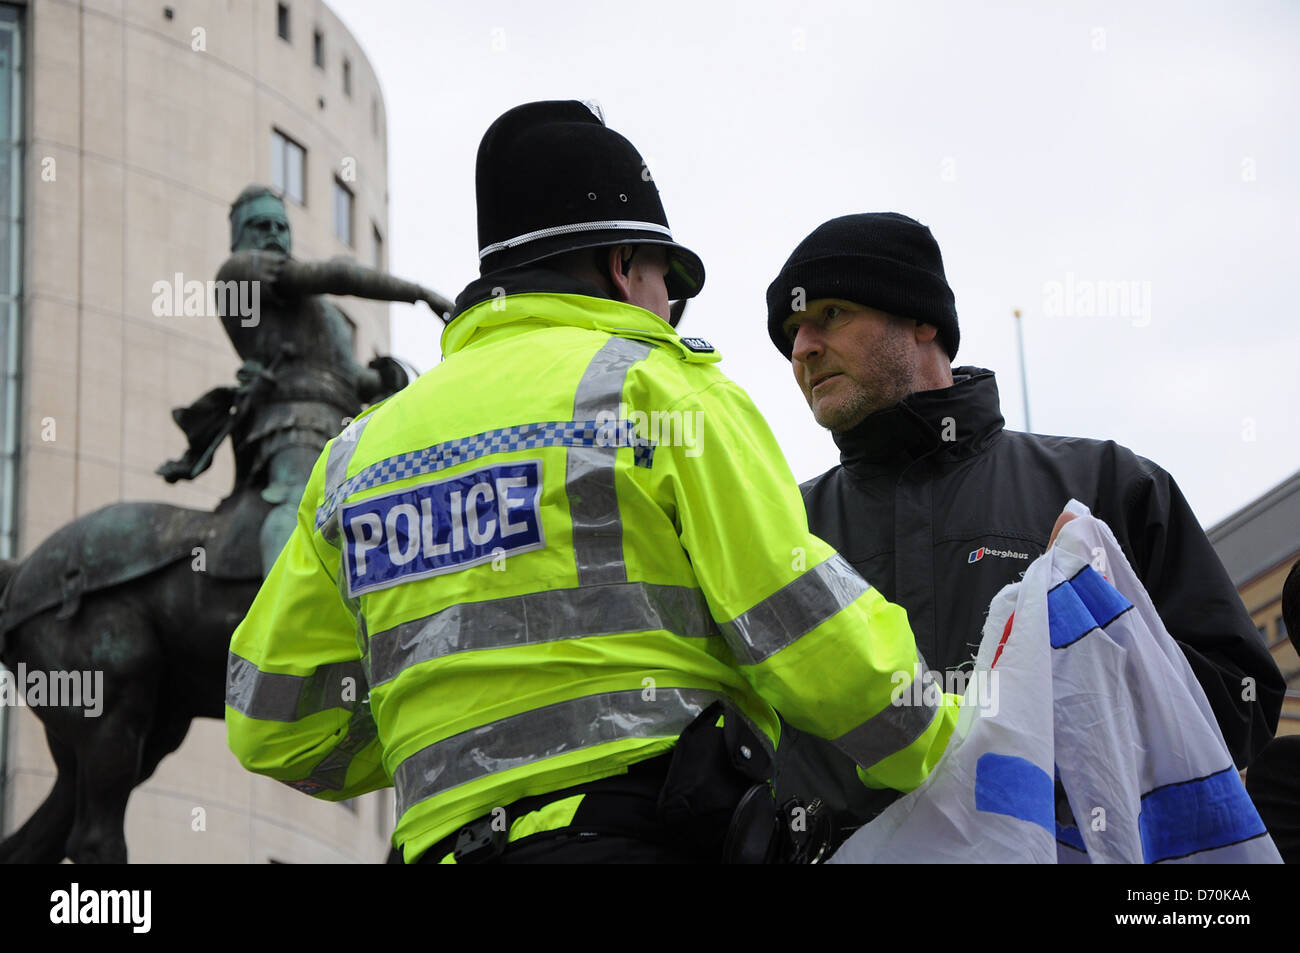 Stimmung gegen die Regierung schneiden Demonstranten versammeln sich in der Innenstadt von Leeds zu protestieren vor The Queens Hotel während der konservative lokale Regierung Konferenz Leeds, England - 25.02.12 Stockfoto